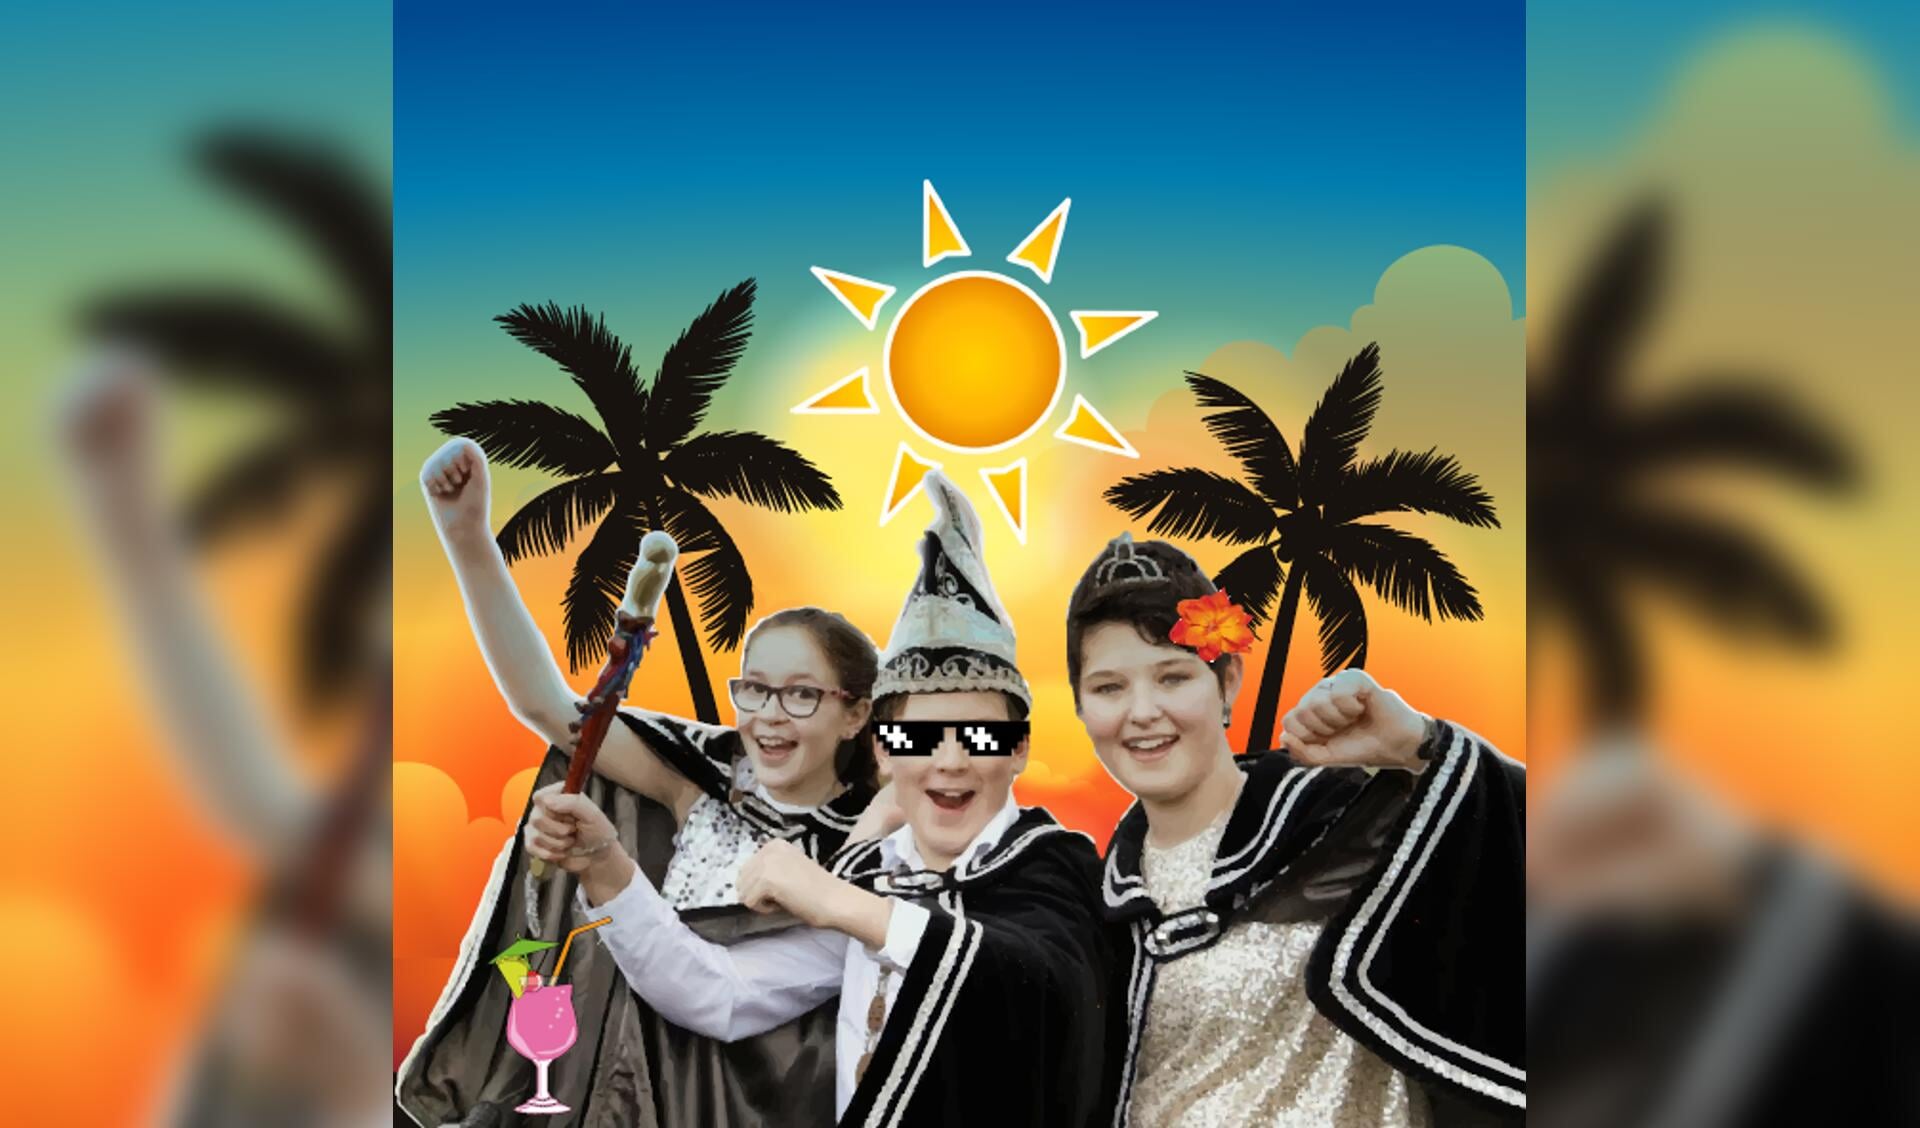 Prins Lars, Prinses Rianne en Page Fleur kunnen onder de stralende zon alsnog een grandioos carnavalsfeest vieren.